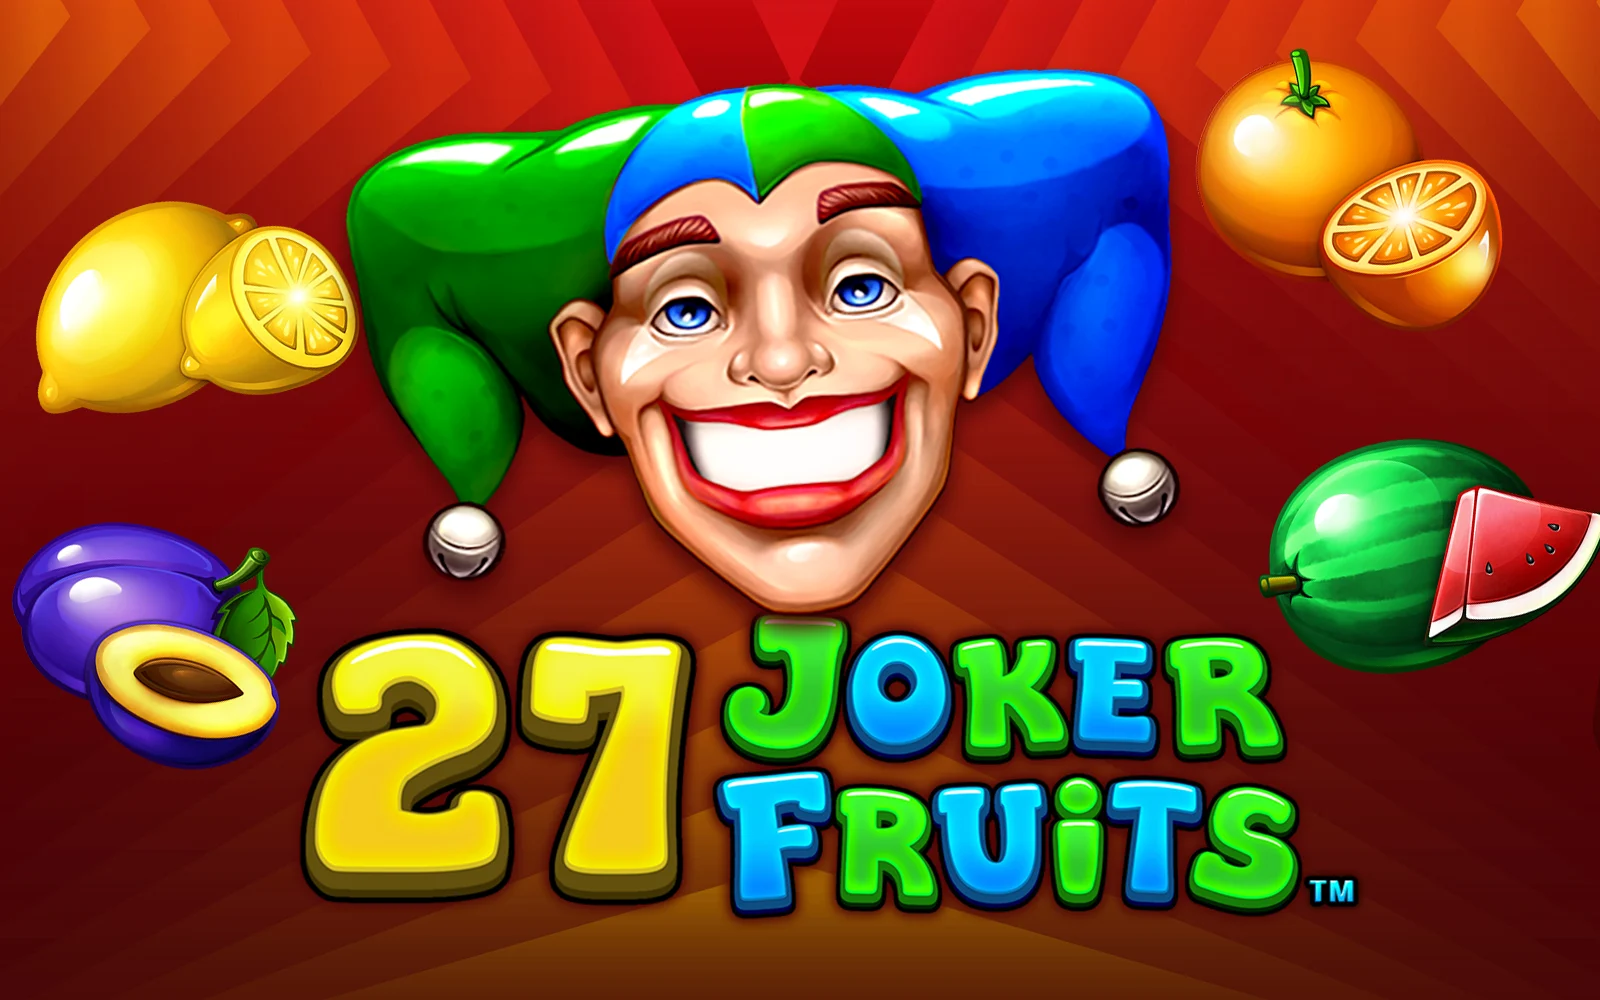 Παίξτε 27 Joker Fruits στο online καζίνο Starcasino.be